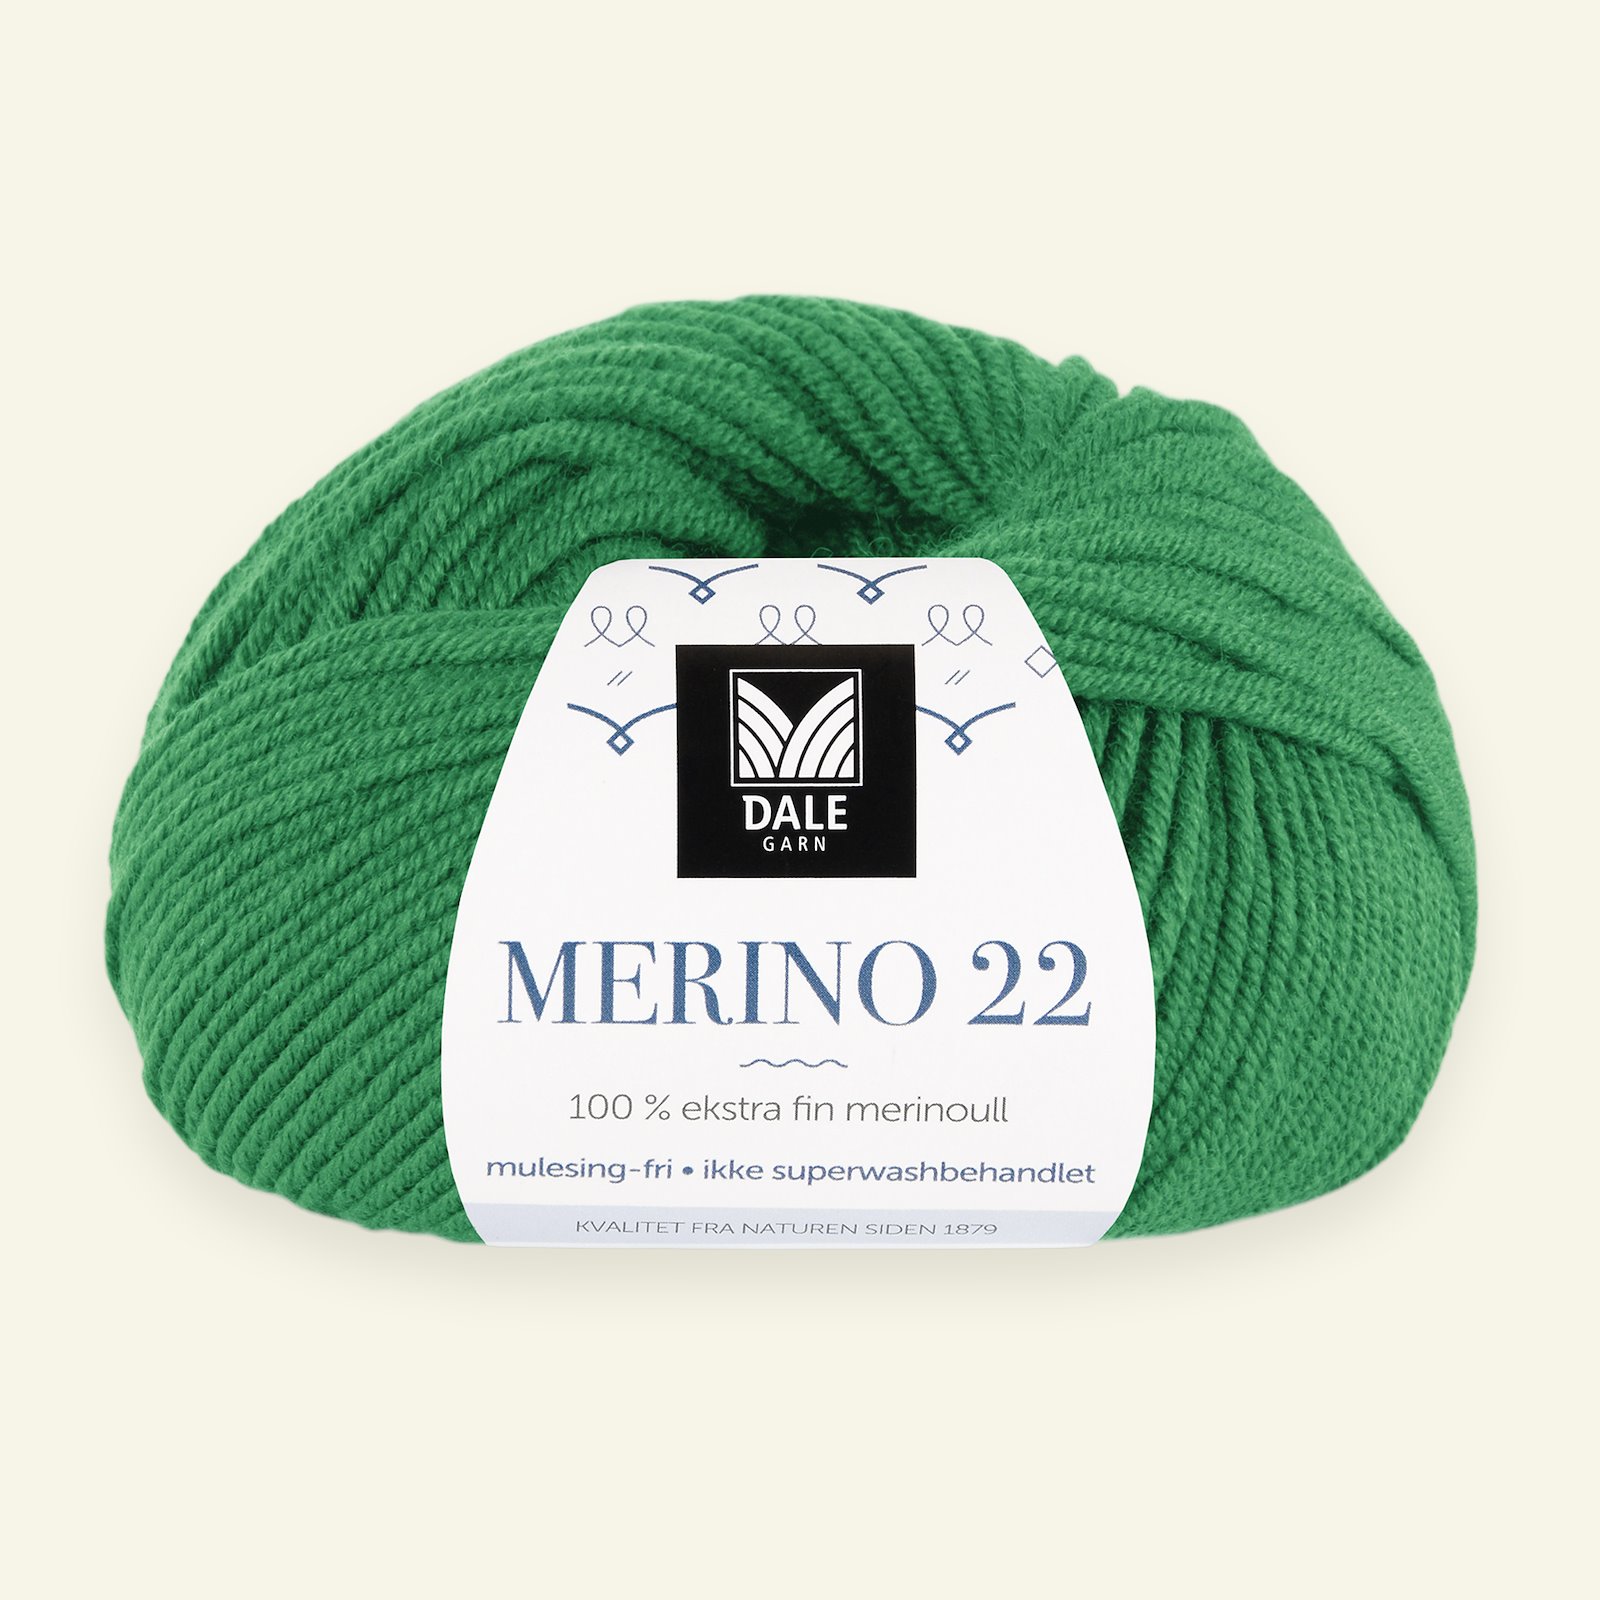 Dale Garn, 100% extra fint merinogarn "Merino 22", grön (2031) 90000392_pack